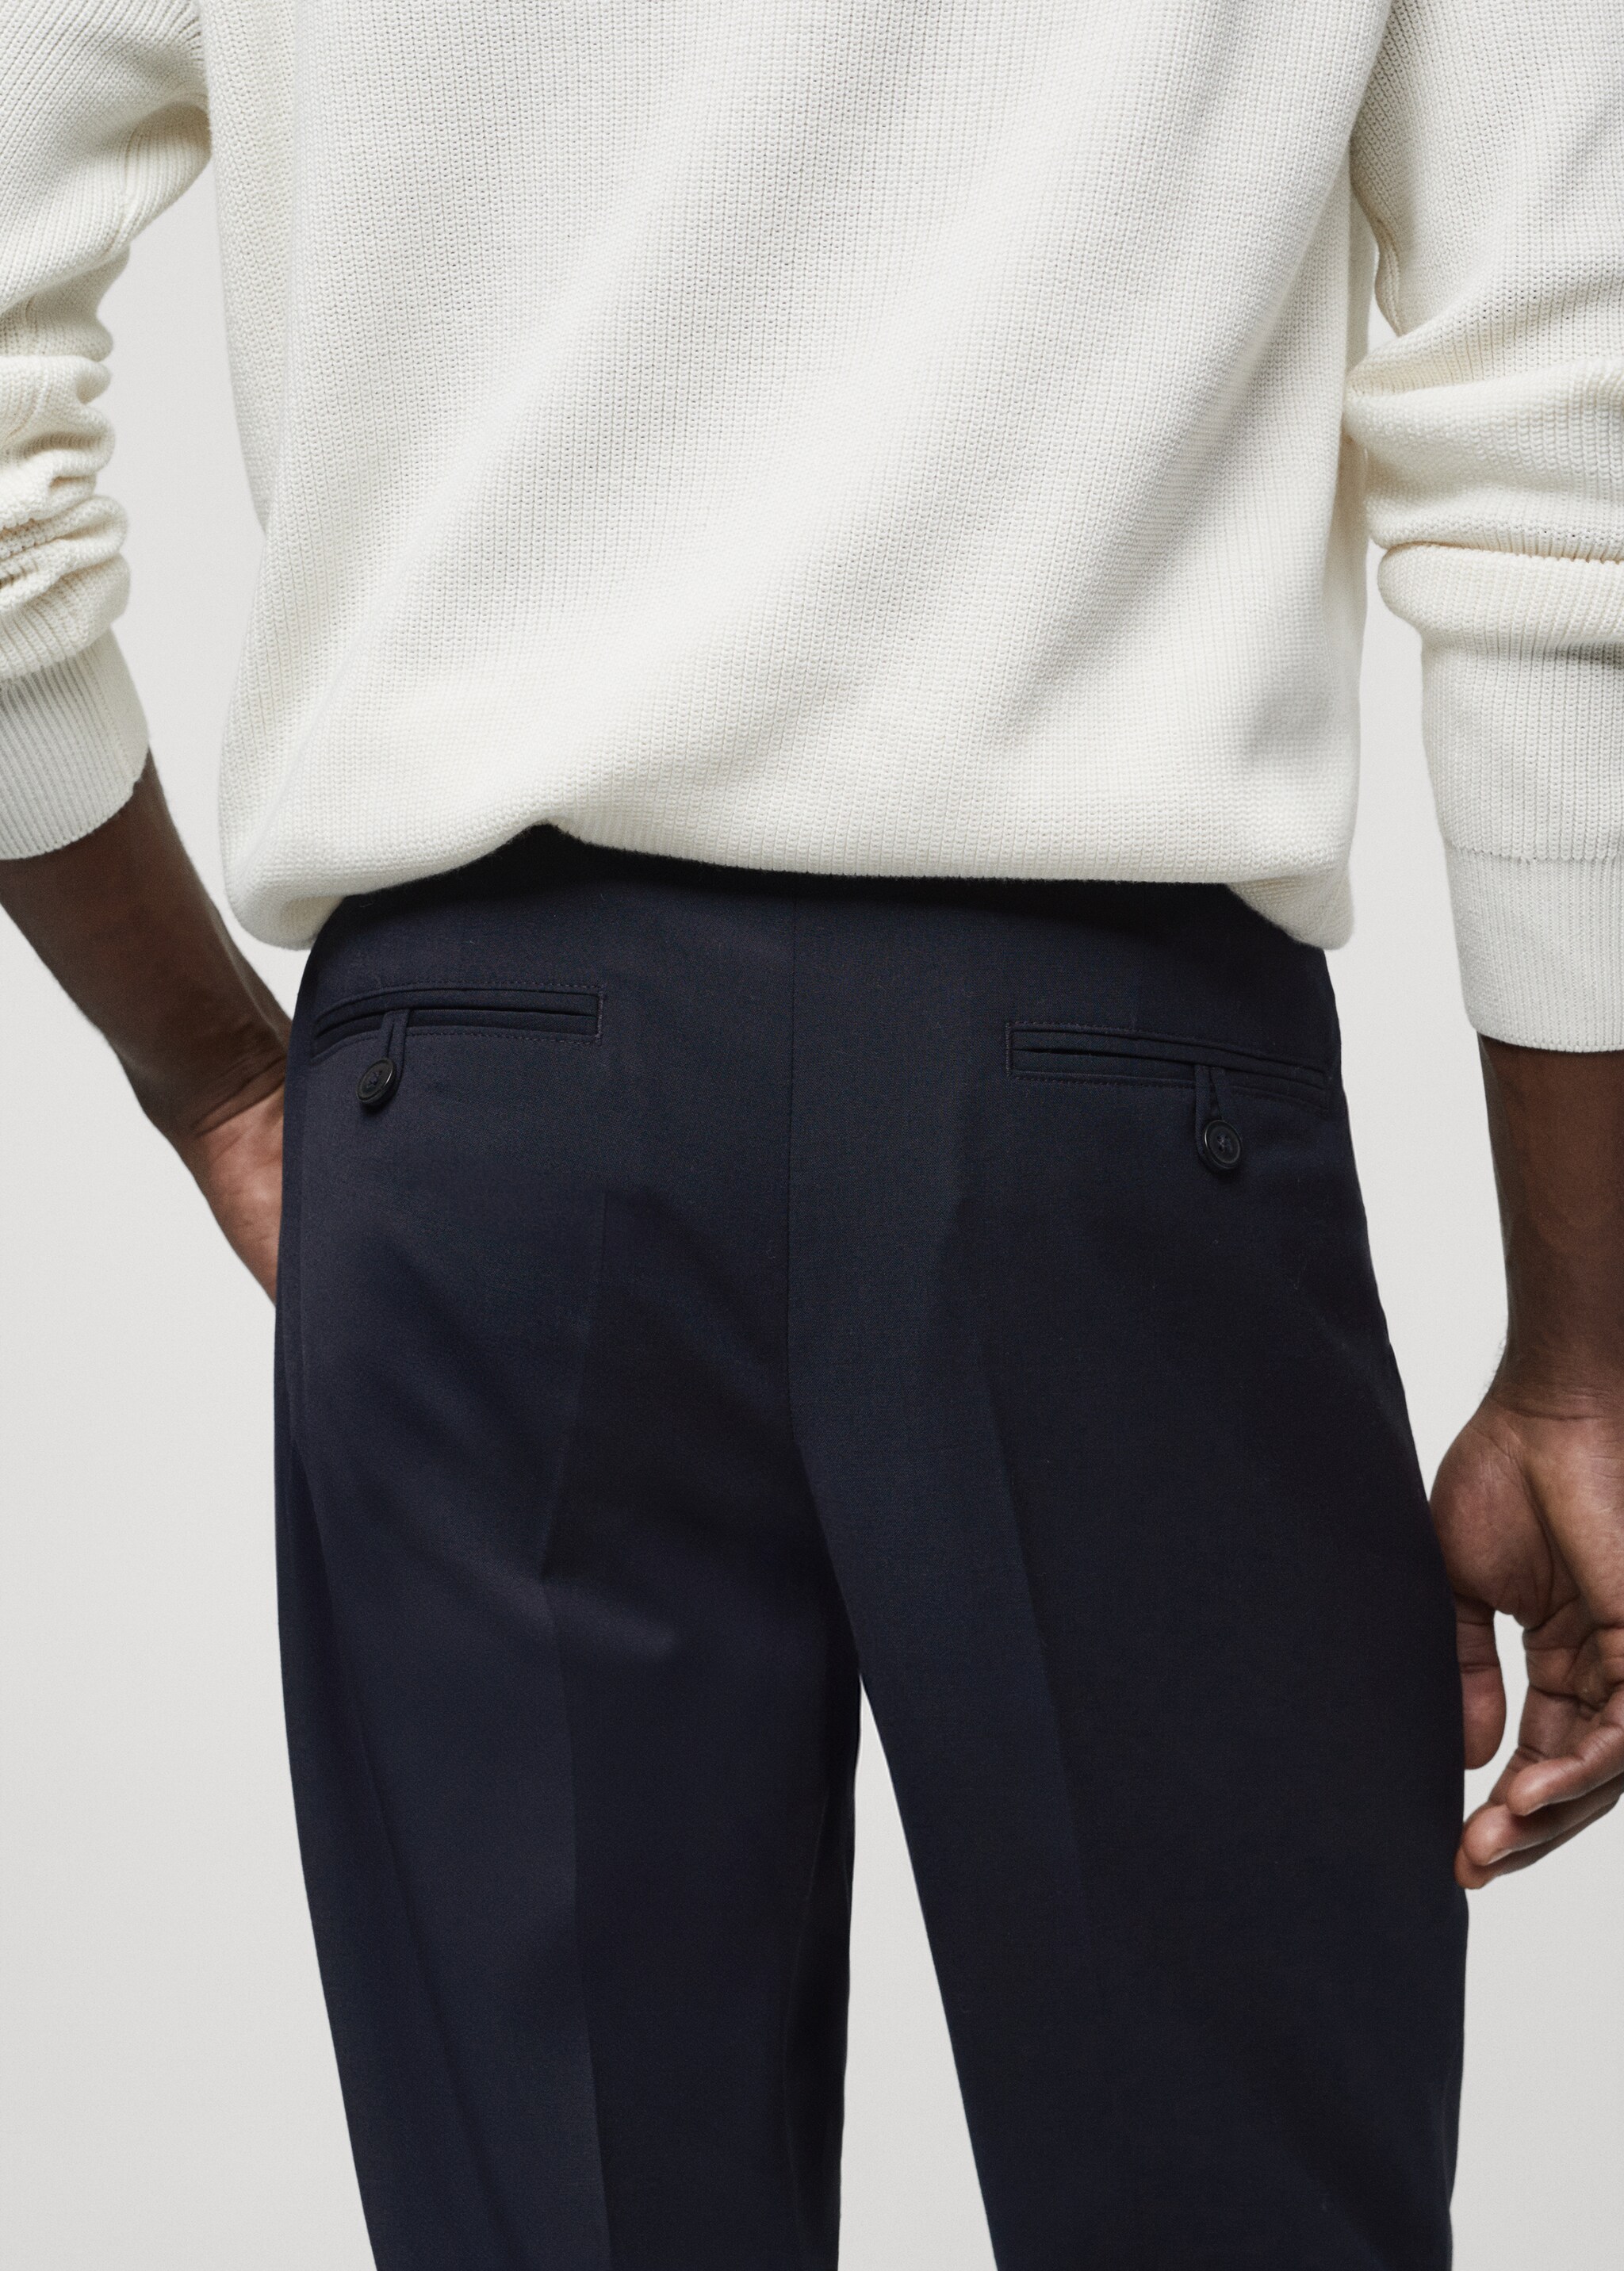 Pantalon laine froide détail pinces - Détail de l'article 4